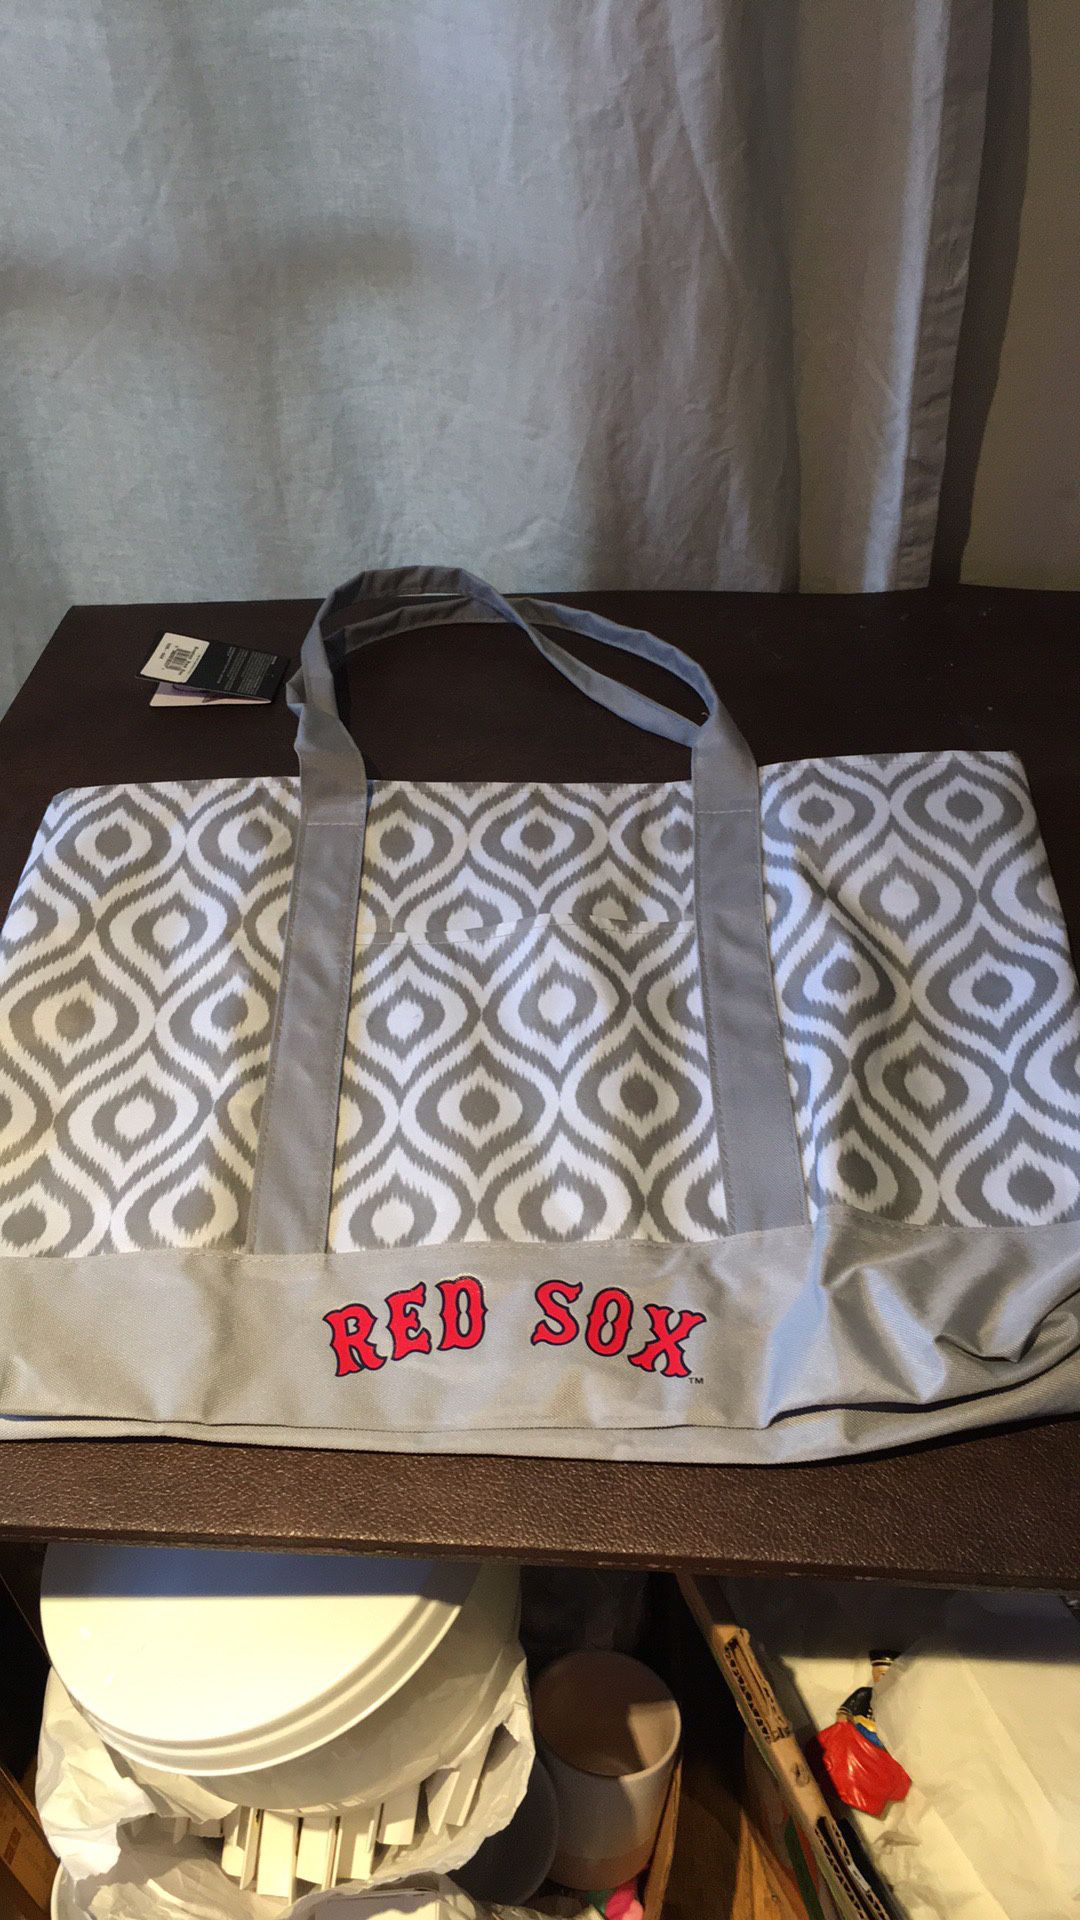 Red Sox tote bag